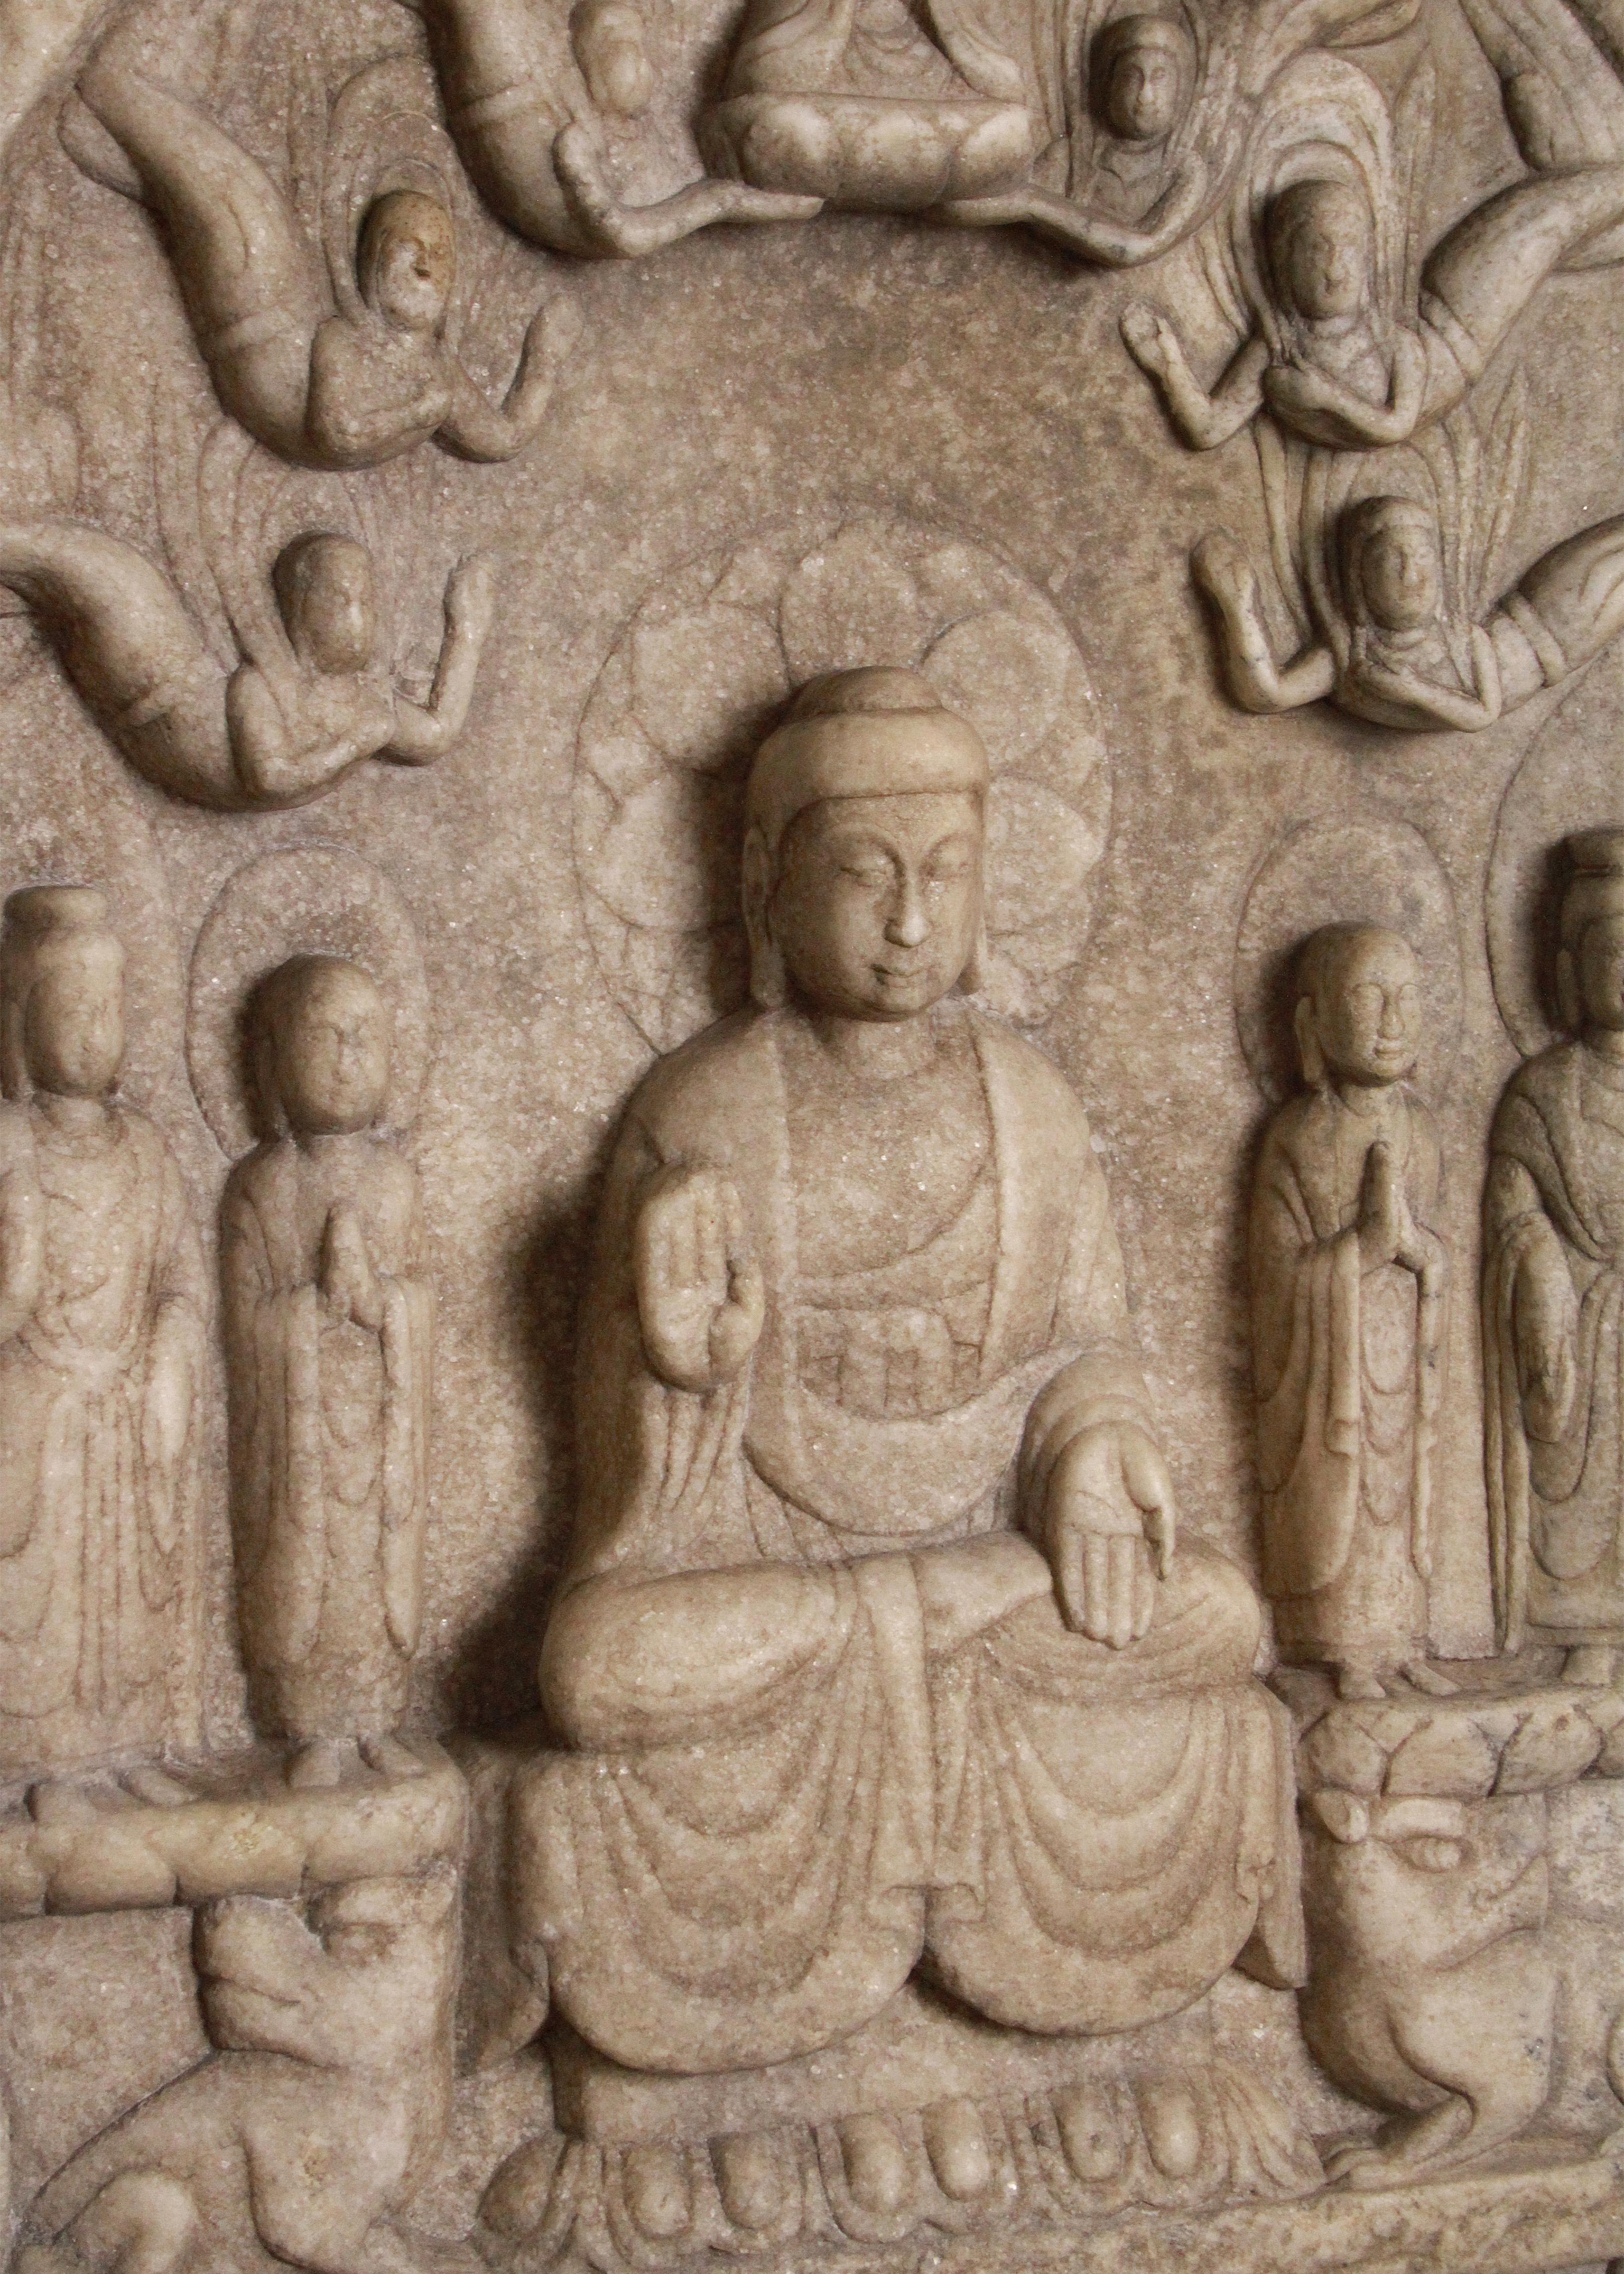 Diese exquisite Stele, die aus makellosem Marmor gehauen wurde, lockt die Besucher mit ihrer ätherischen Präsenz an. Die Szene wurde ursprünglich 537 von Yuan'ning, dem Prinzen des Gaoping Branch der kaiserlichen Familie Wei, in Auftrag gegeben.  Es